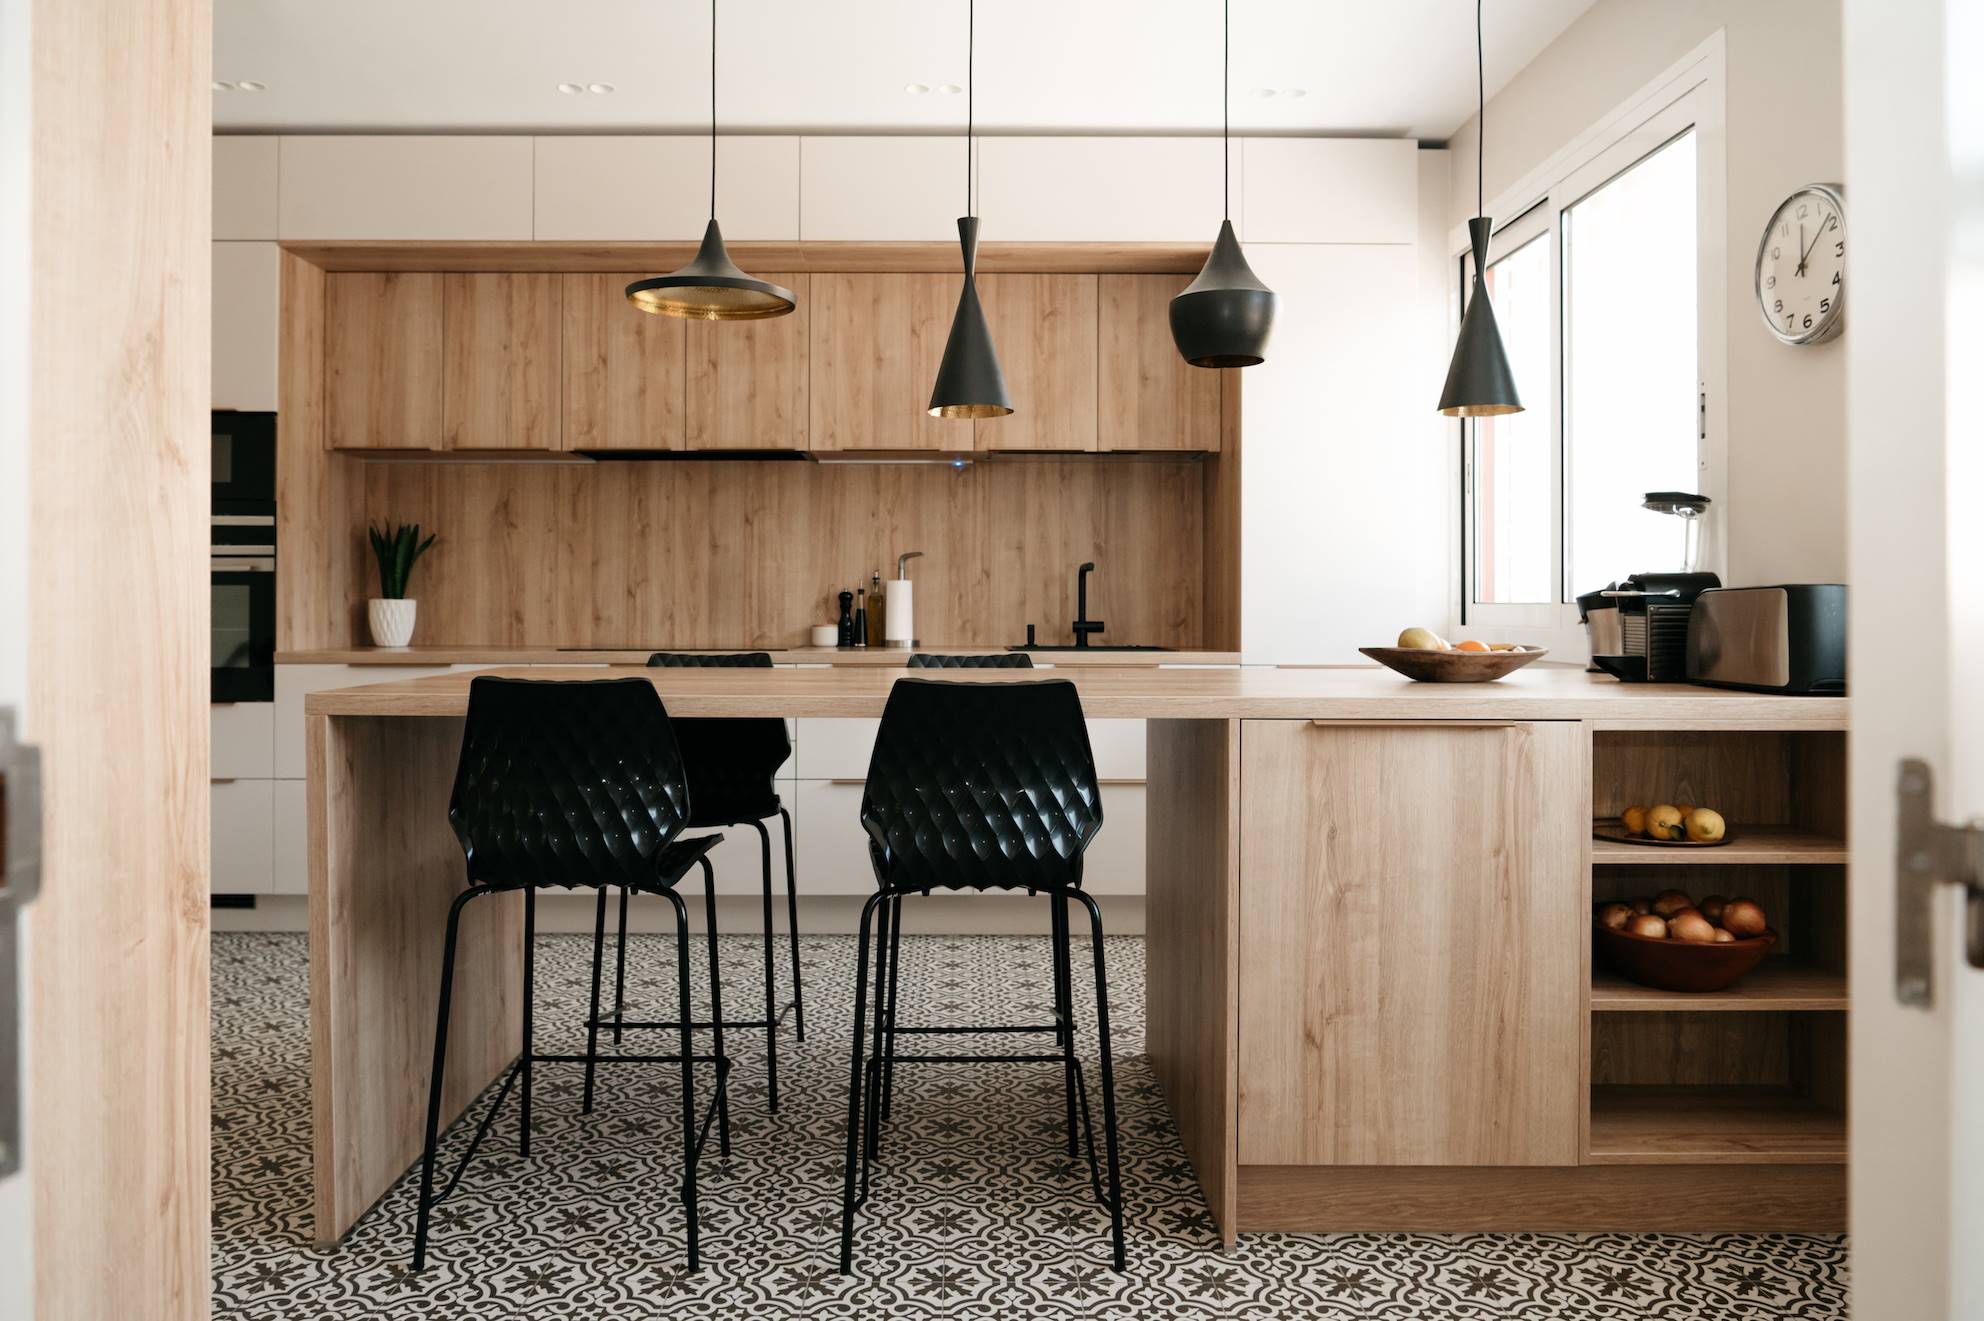 Una cocina moderna con isla y sillas altas en color negro.